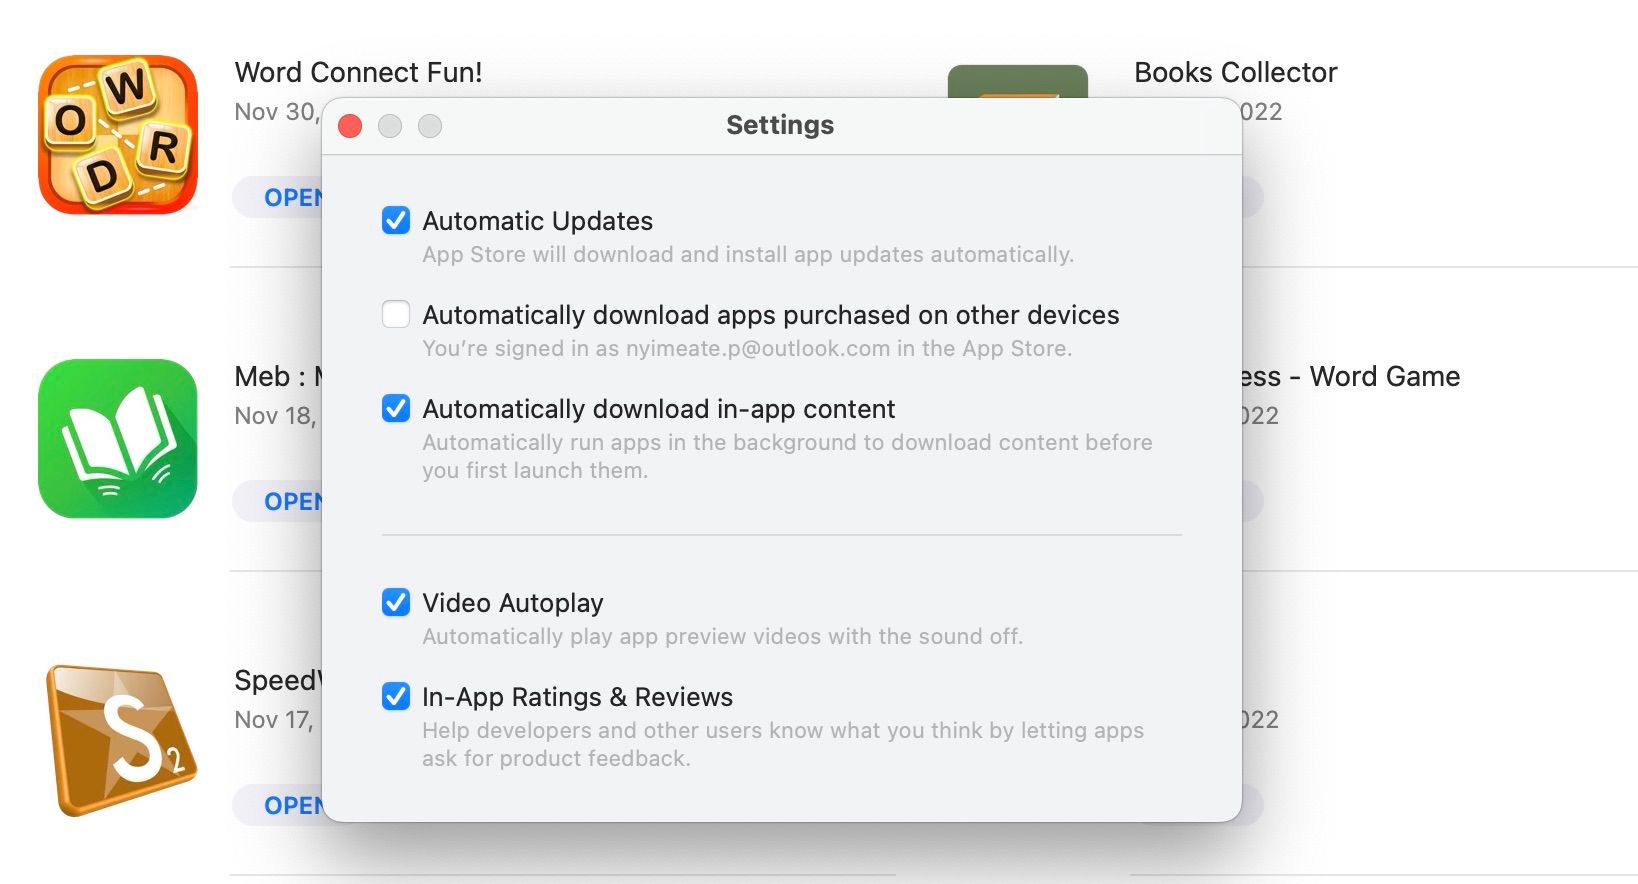 App Store settings window on macOS